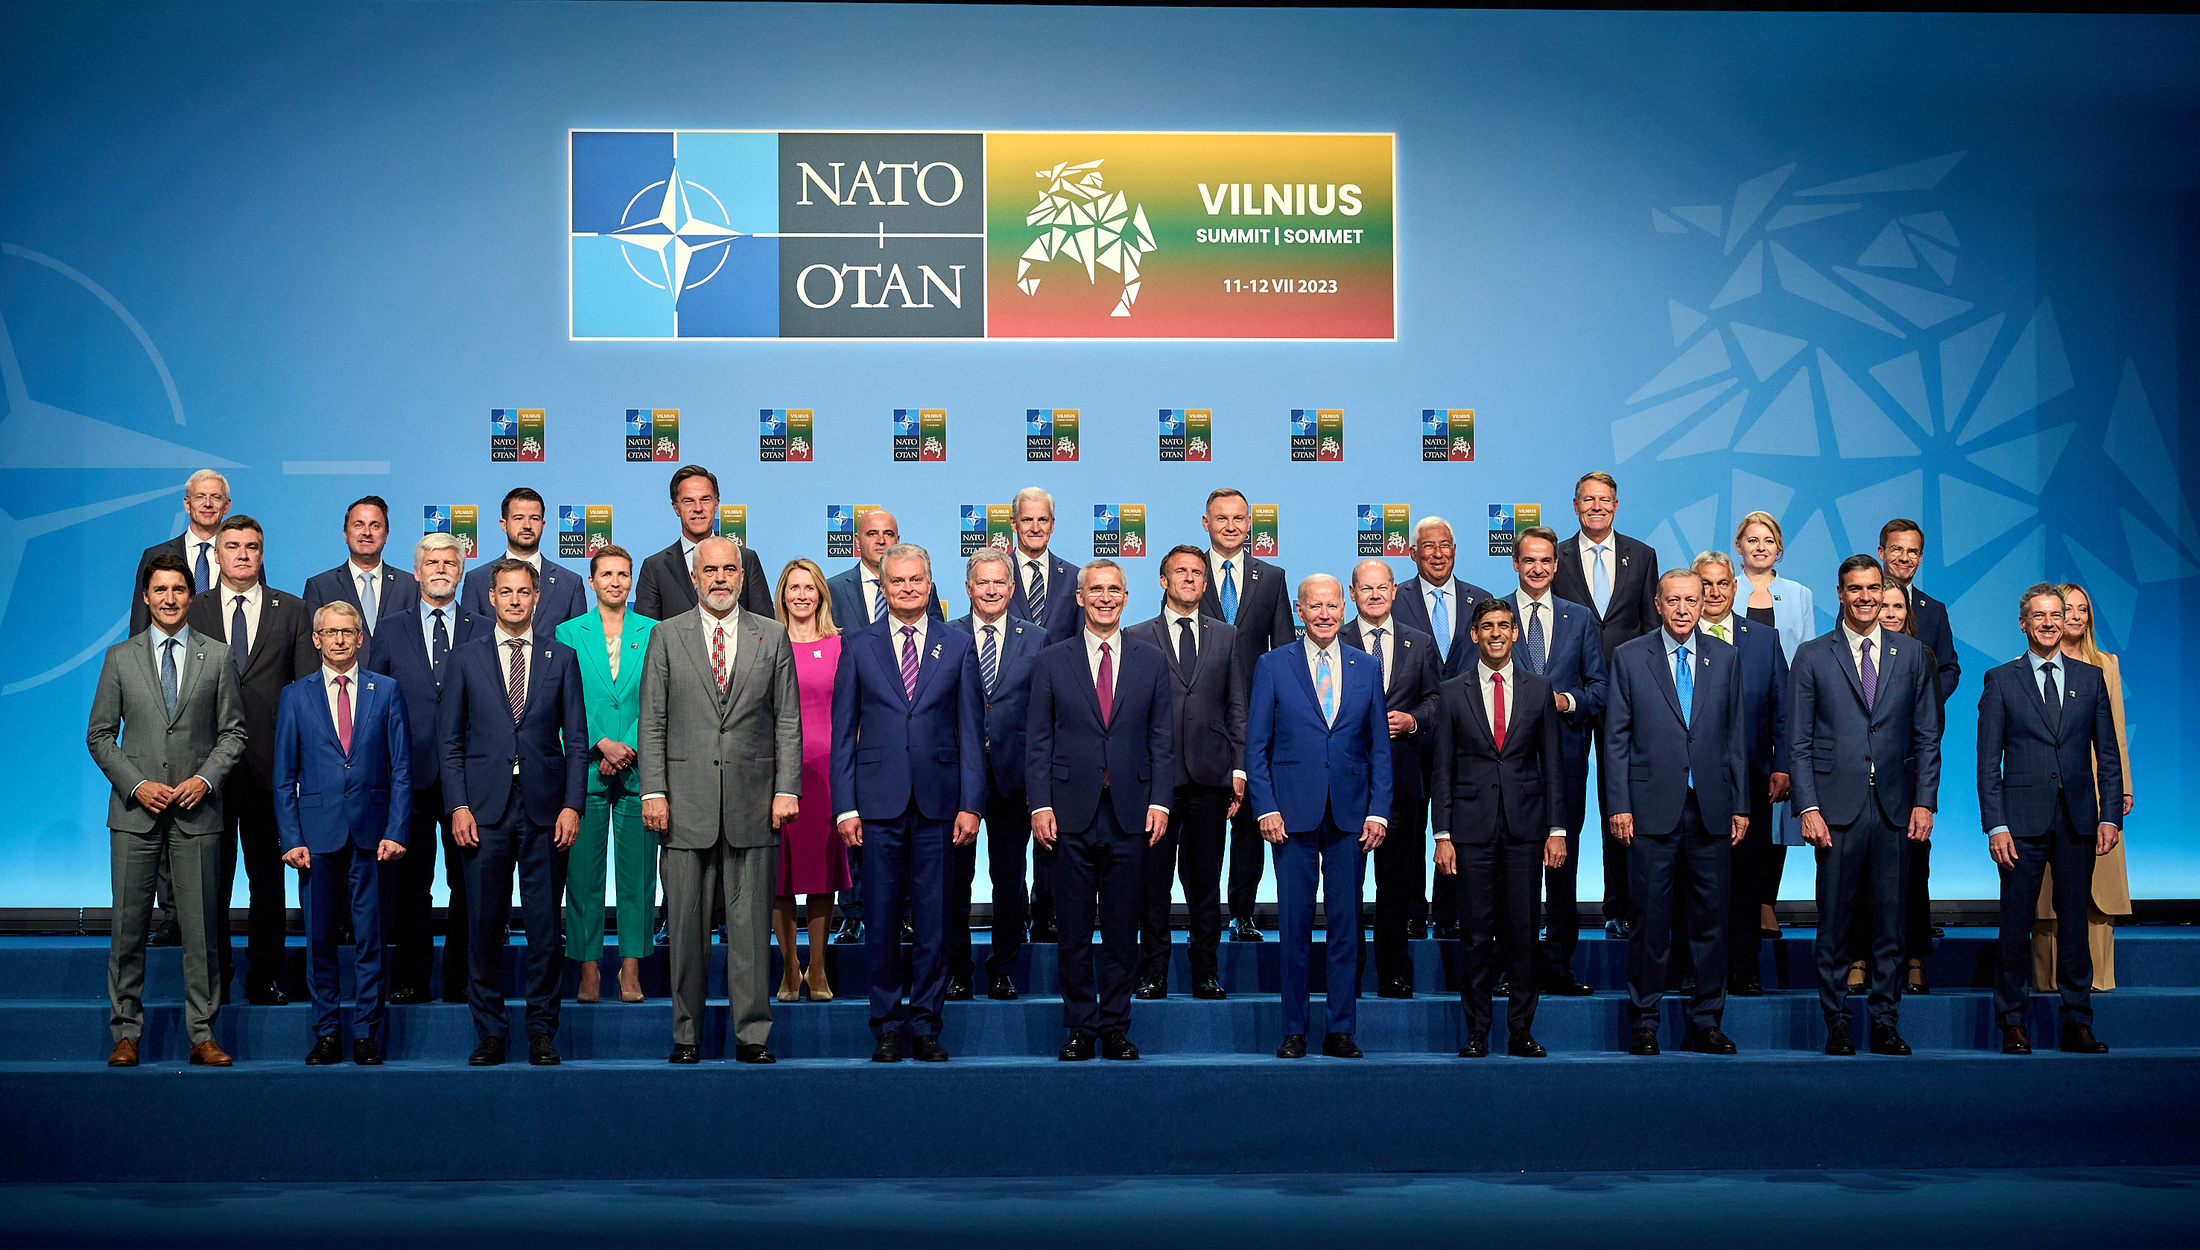 NATO Review The 2023 NATO Summit in retrospect